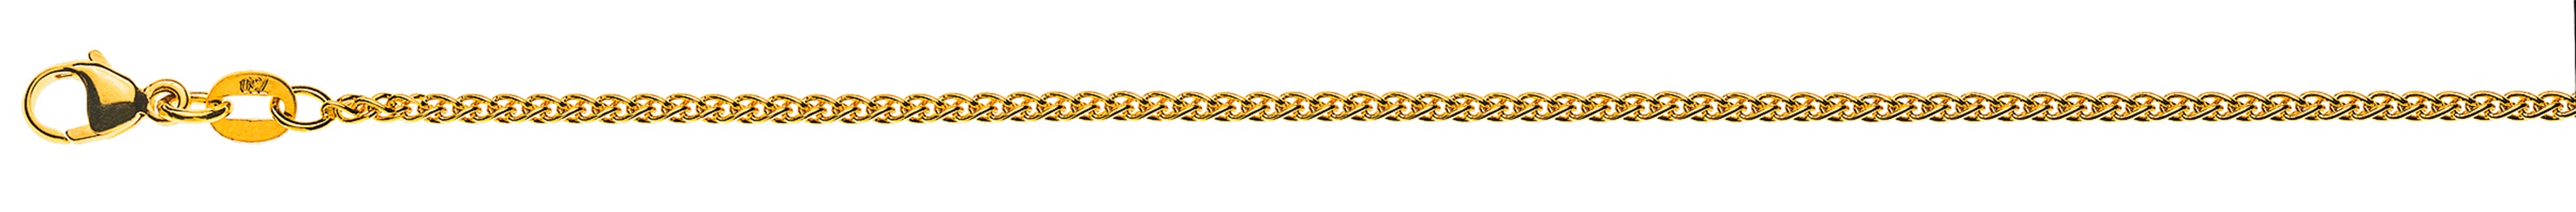 AURONOS Style Halskette Gelbgold 9K Zopfkette 40cm 1.65mm